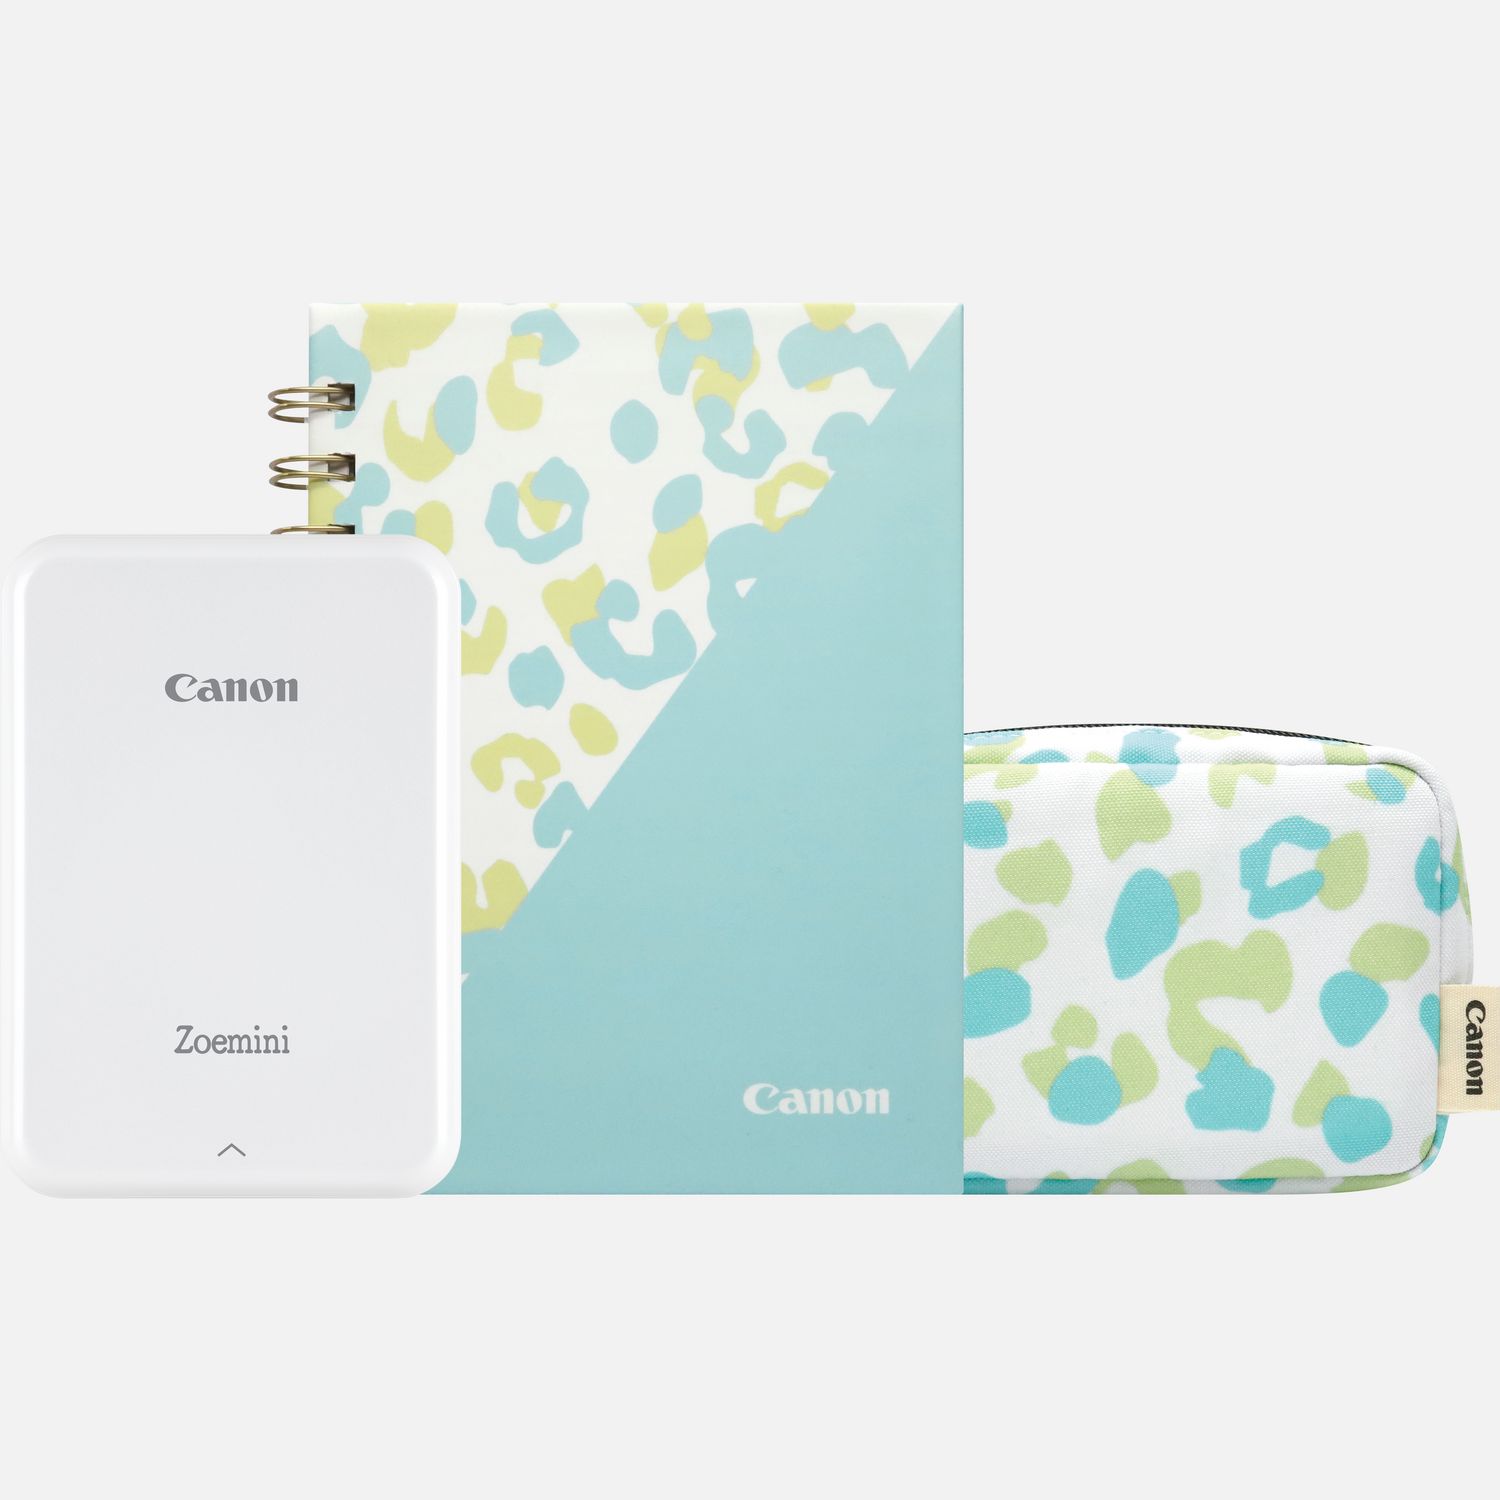 Image of Stampante fotografica portatile a colori Canon Zoemini (bianca), diario e custodia